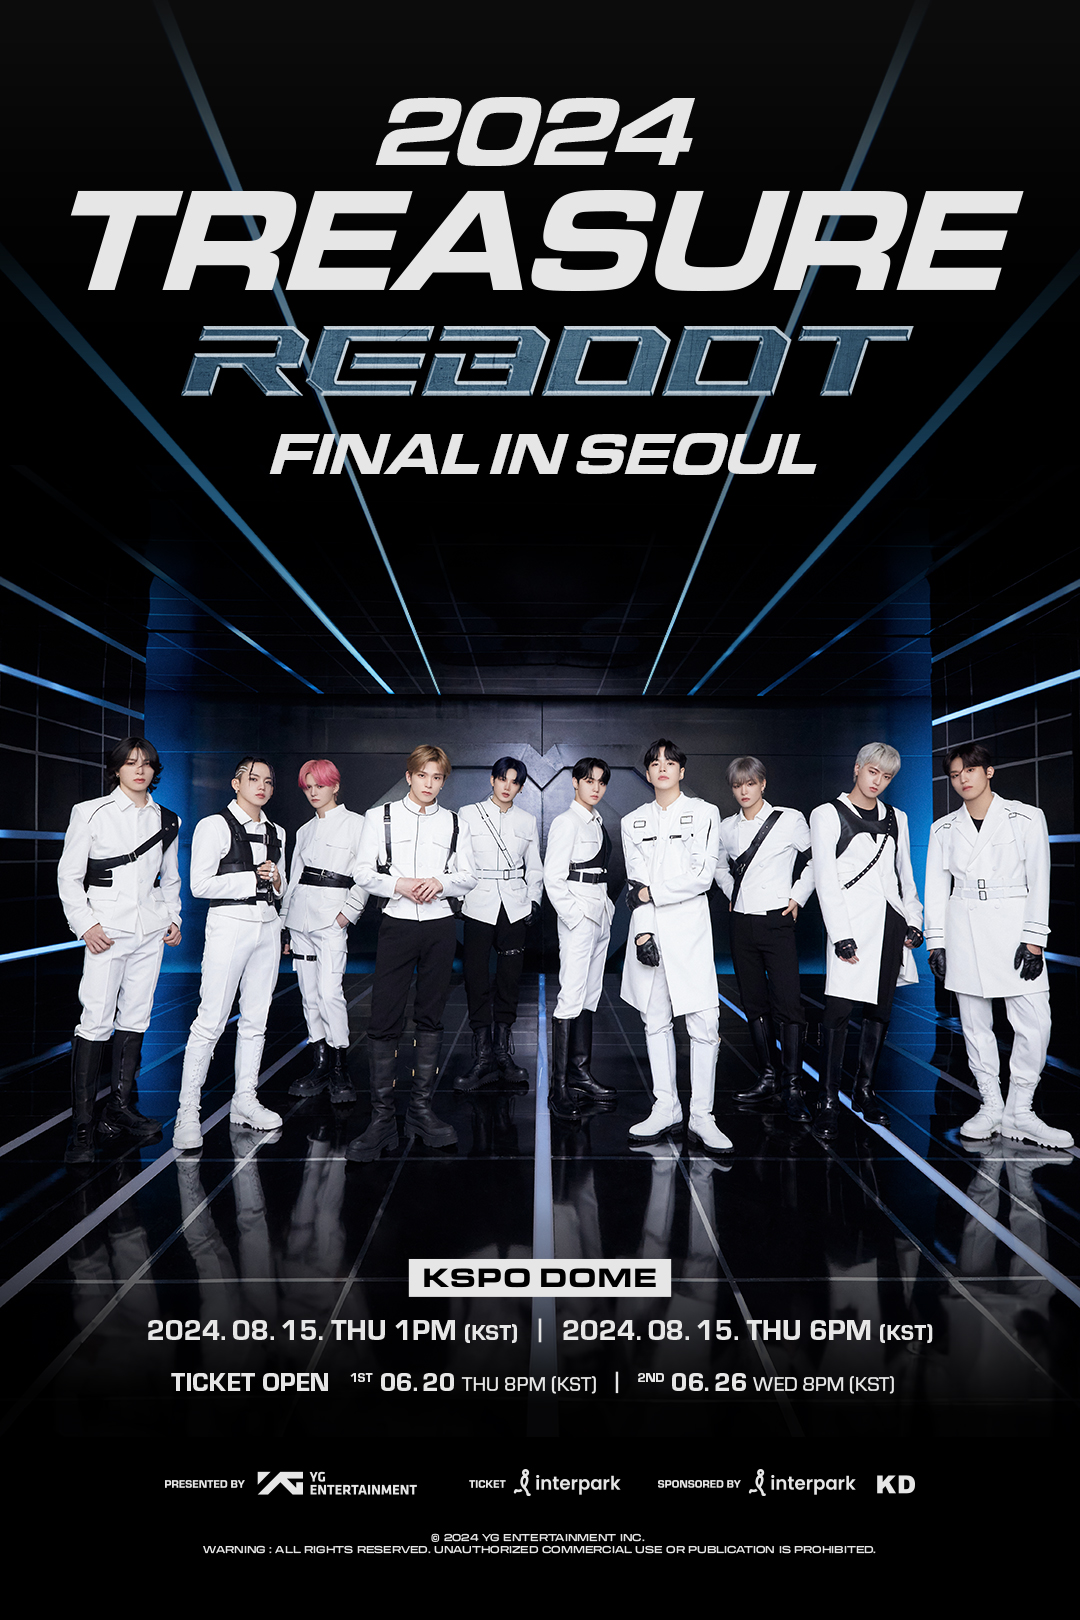 2024 TREASURE RELAY TOUR [REBOOT] FINAL IN SEOUL JTBツアー